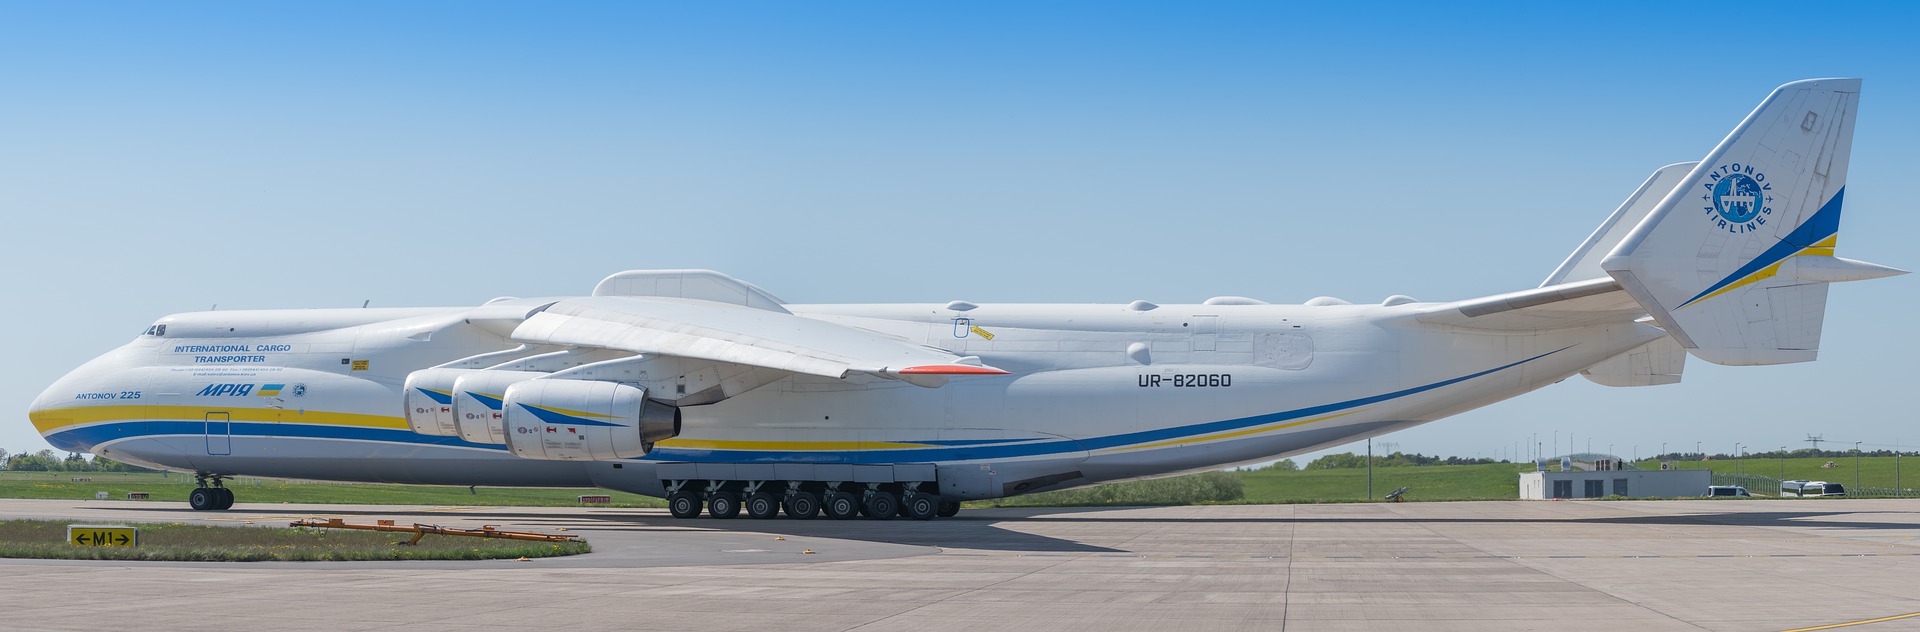 самолет Ан-124 и самолет Ан-225